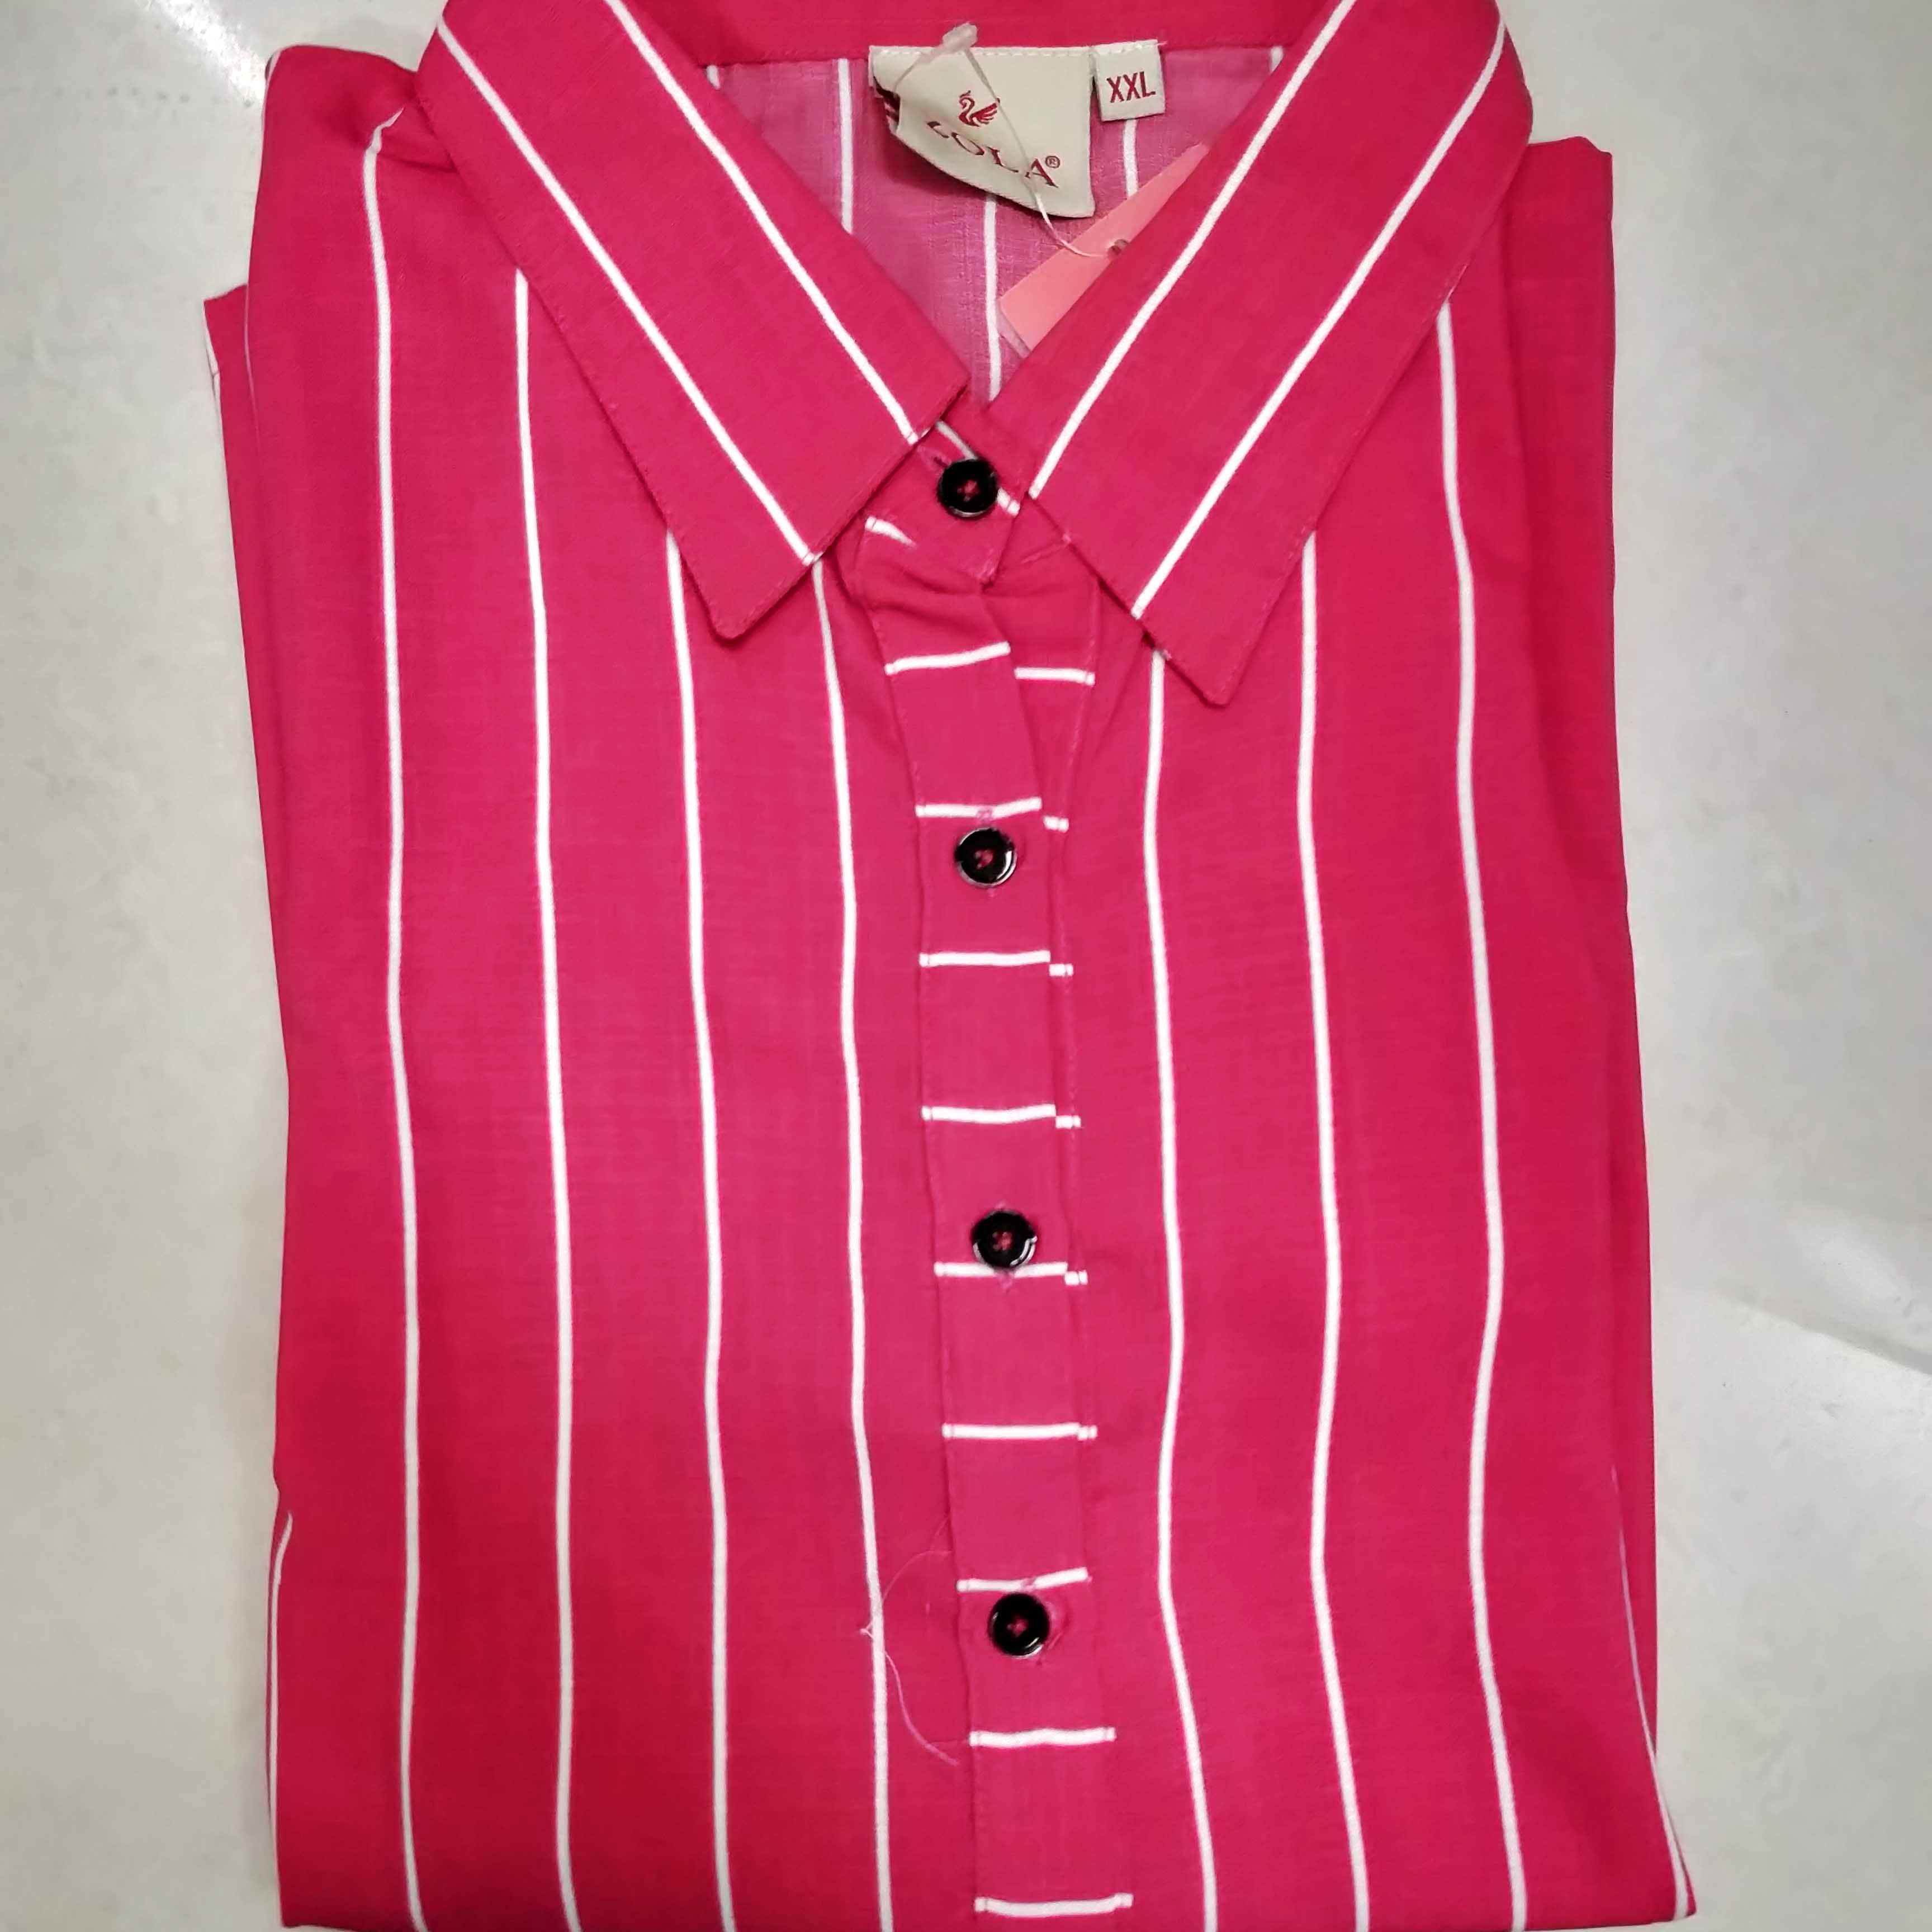 Clothing,Pink,Collar,Magenta,Outerwear,Shirt,Button,Sleeve,Dress shirt,Sleeveless shirt